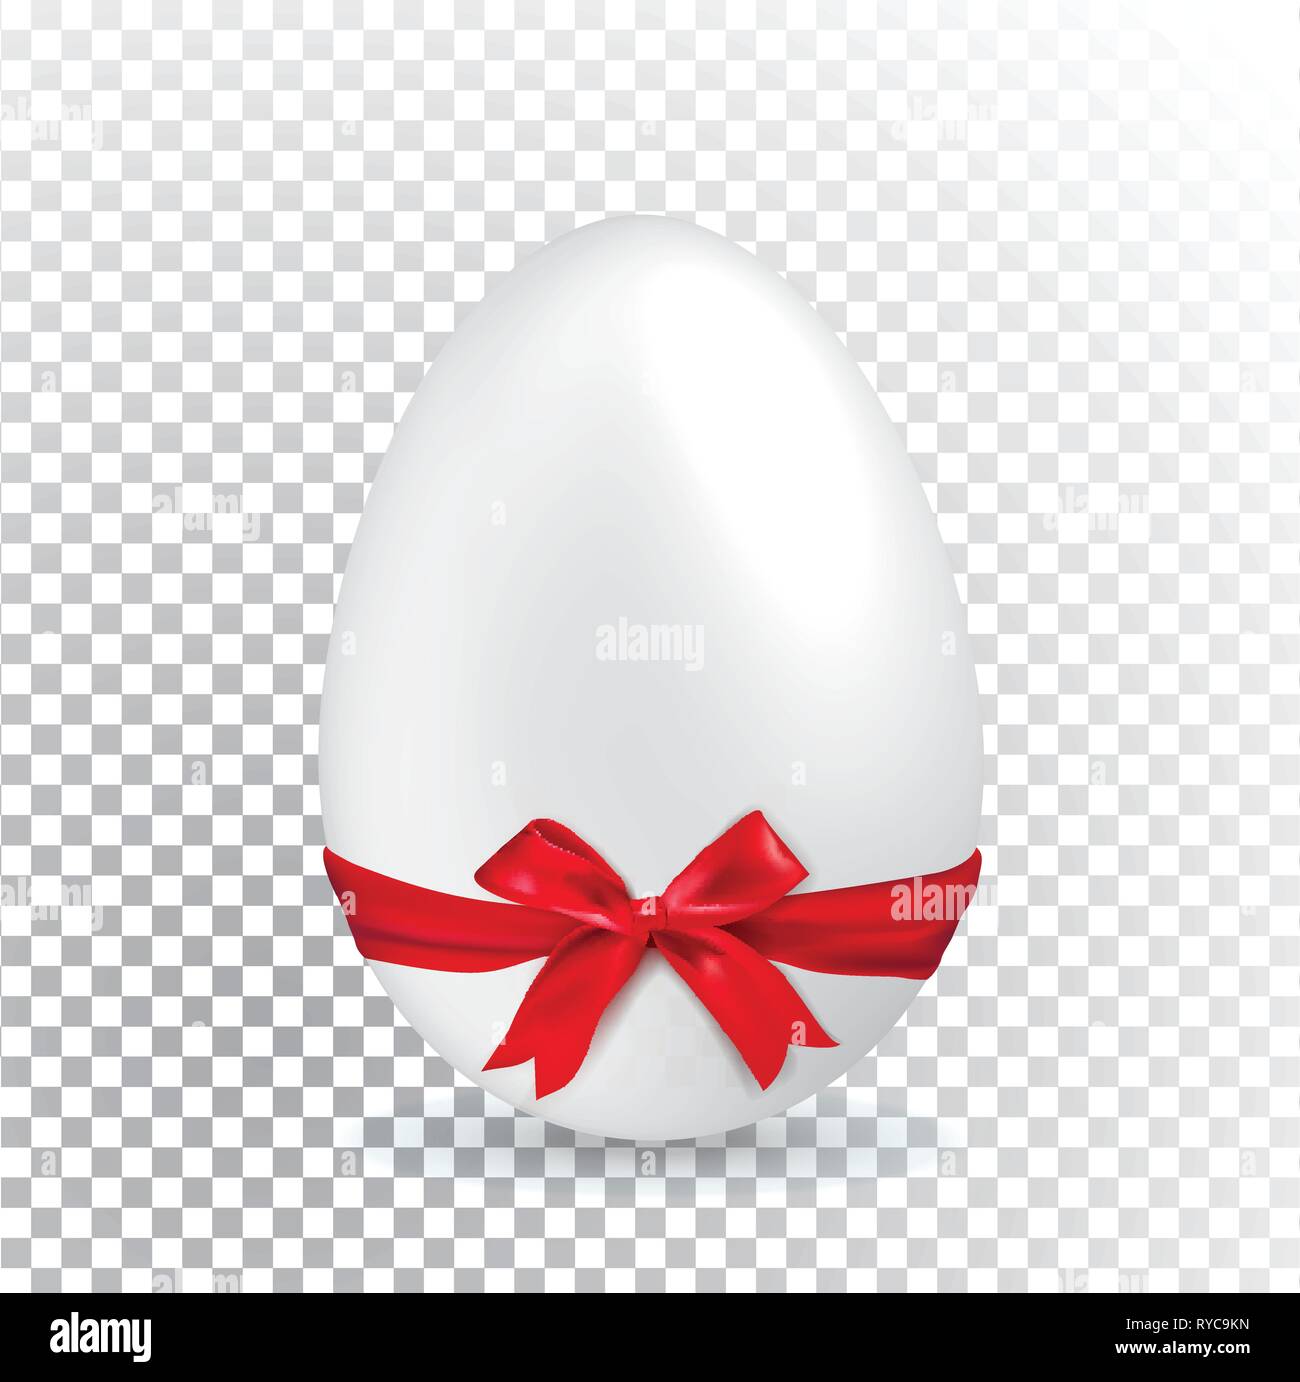 Bianco d'uovo di pasqua con nastro rosso su sfondo trasparente. Minimalismo.. Vendita banner Illustrazione Vettoriale